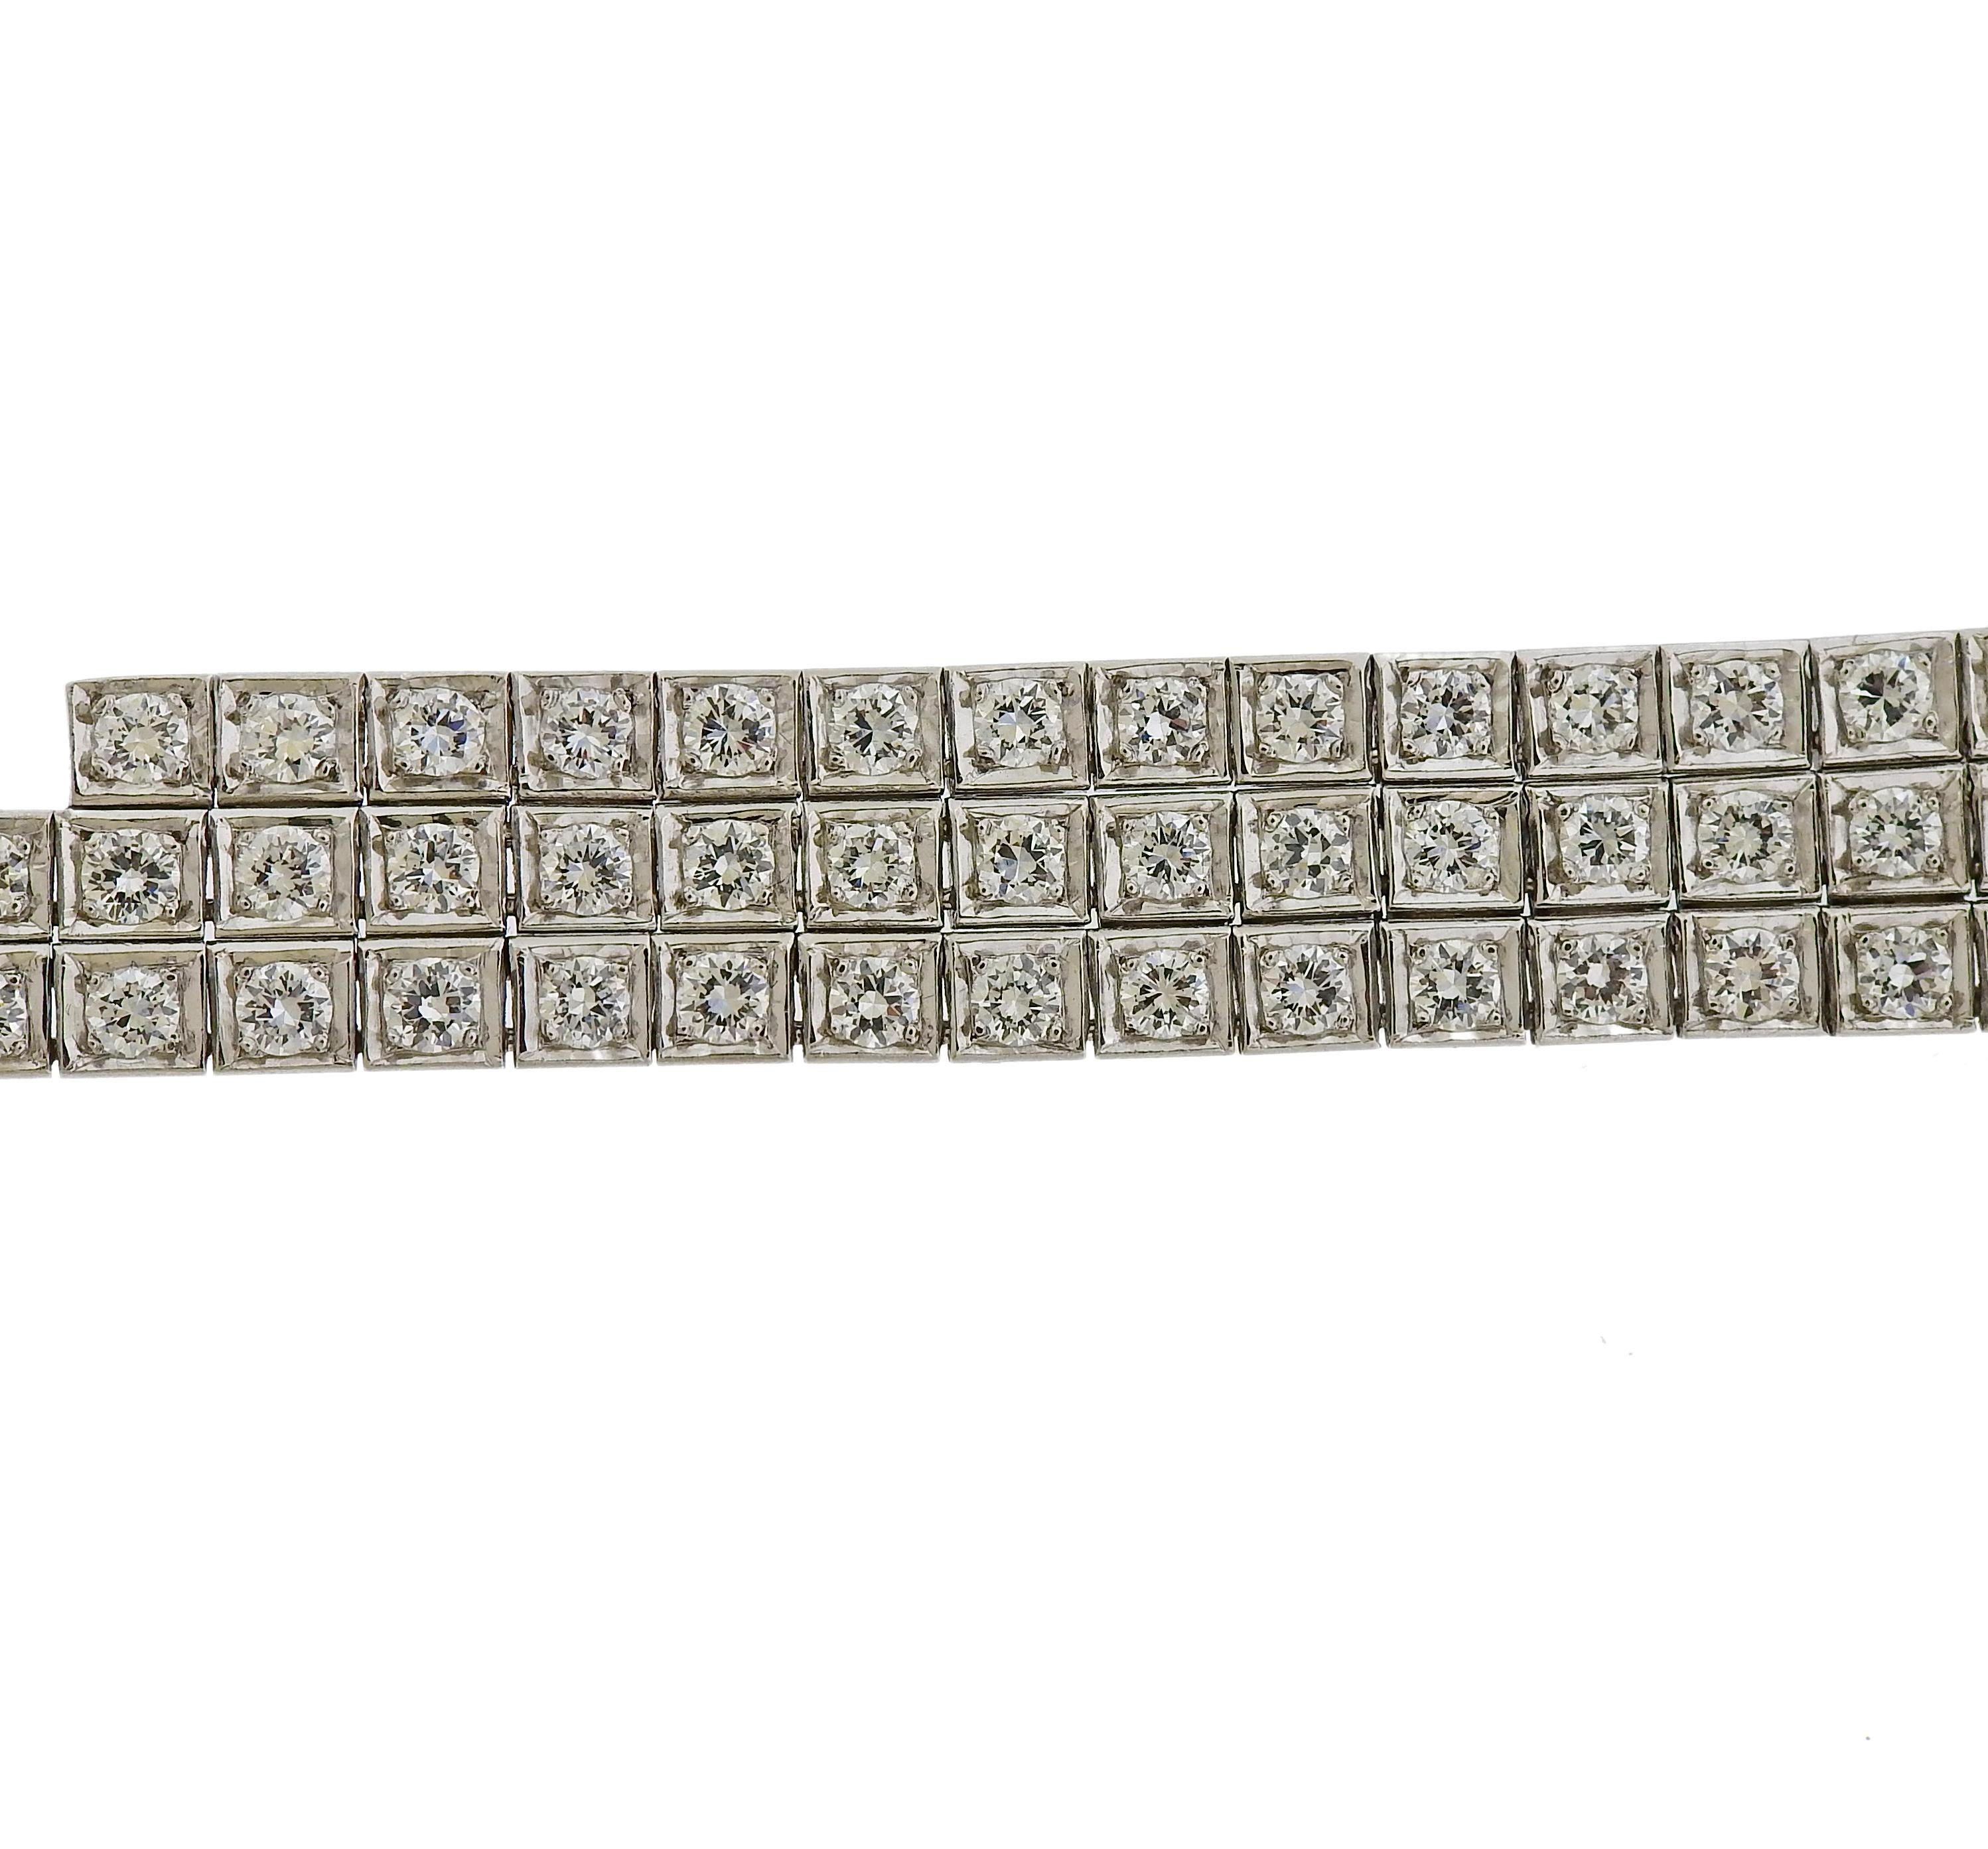 Armband aus 18 Karat Weißgold, besetzt mit ca. 6 Karat  in Diamanten. Das Armband ist 6